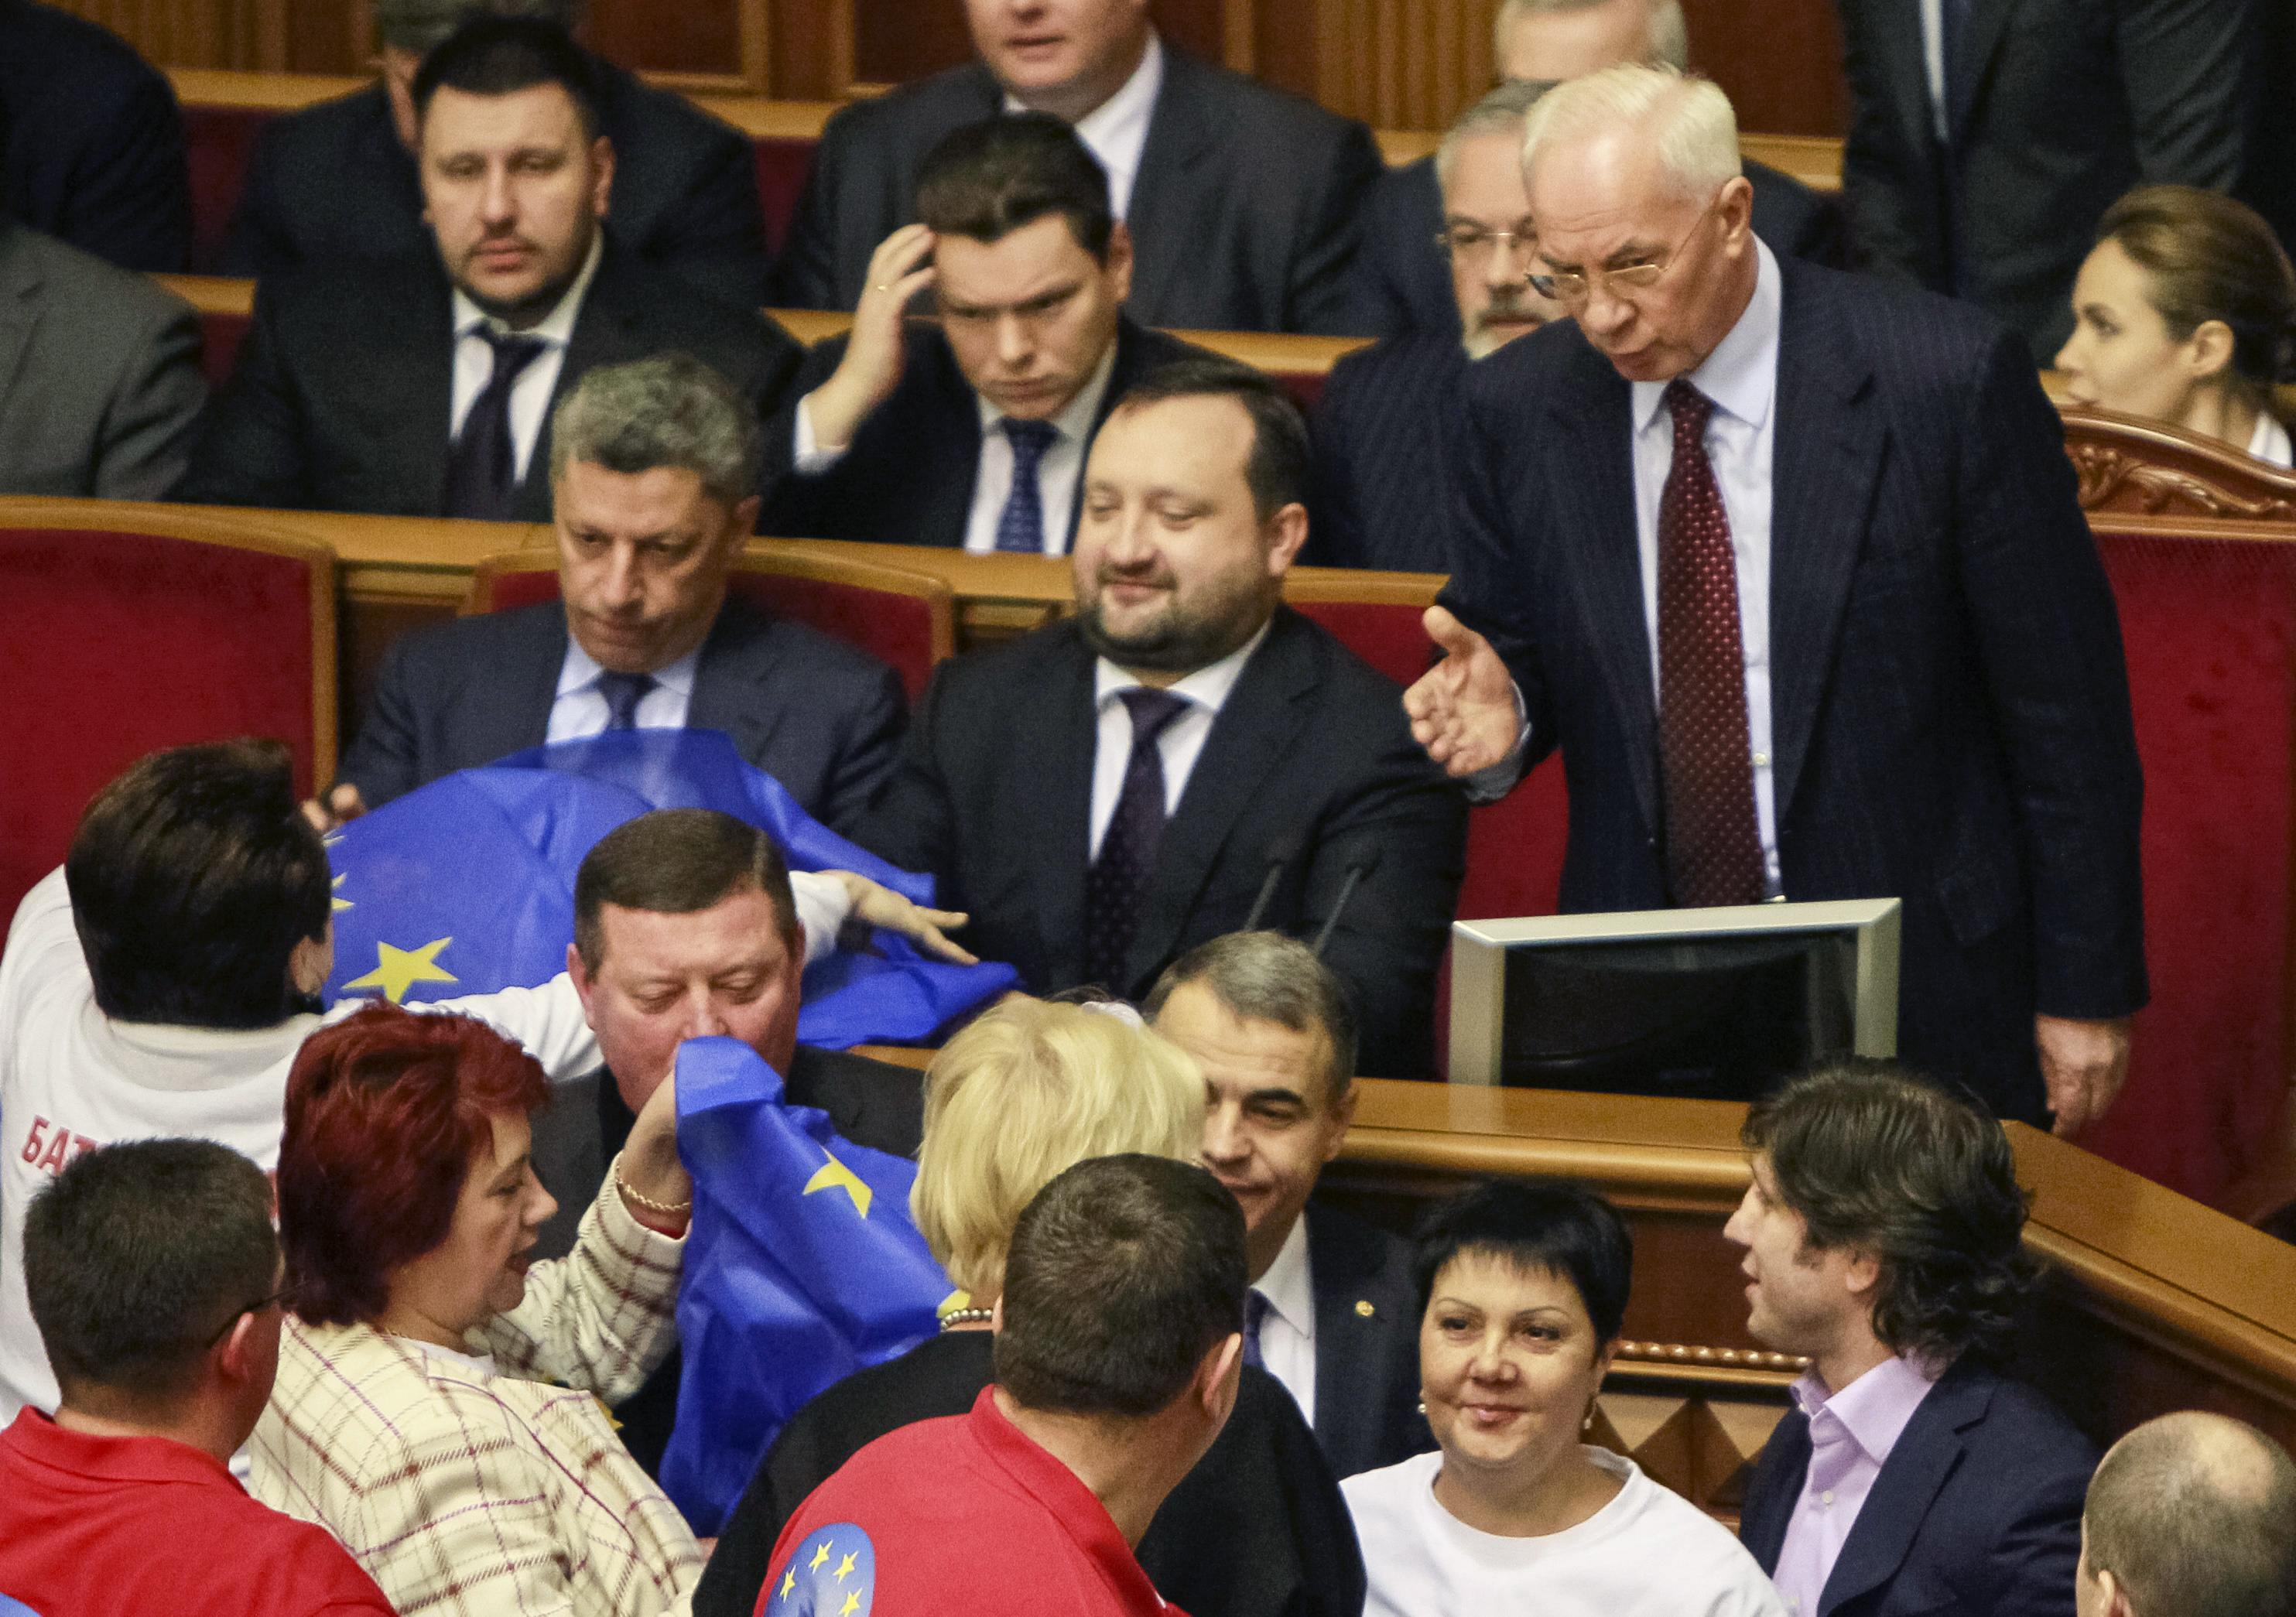 Ουκρανία: Ο πρωθυπουργός υπέρ της αναστολής της προετοιμασίας για τη συμφωνία σύνδεσης με την ΕΕ